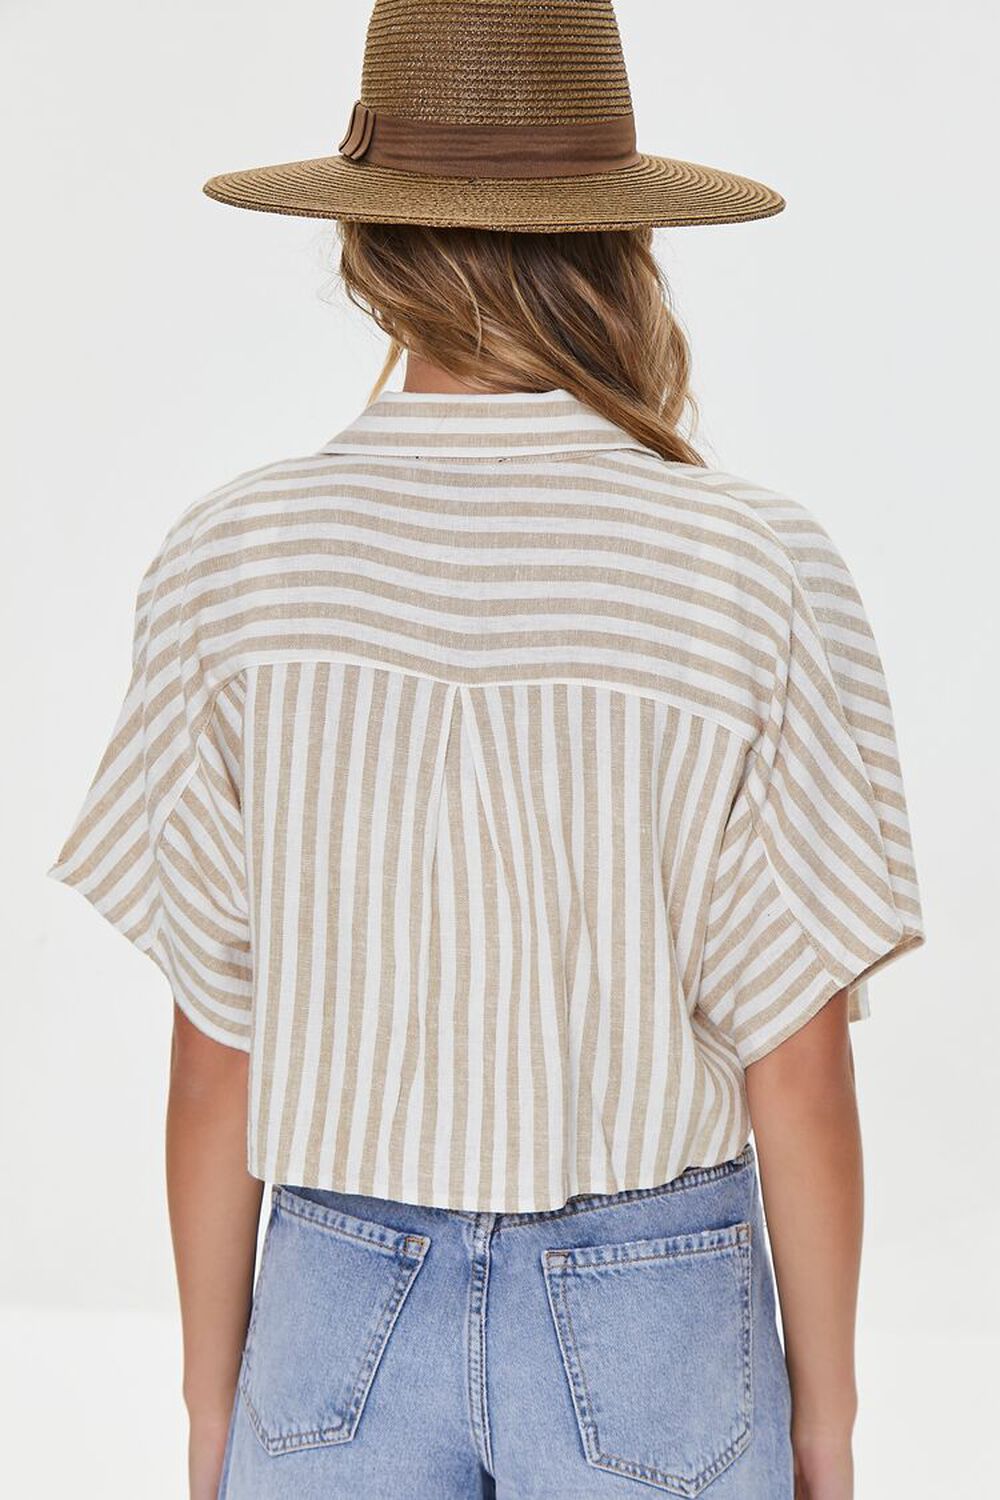 AUBURN/CREAM Striped Linen-Blend Shirt, image 3